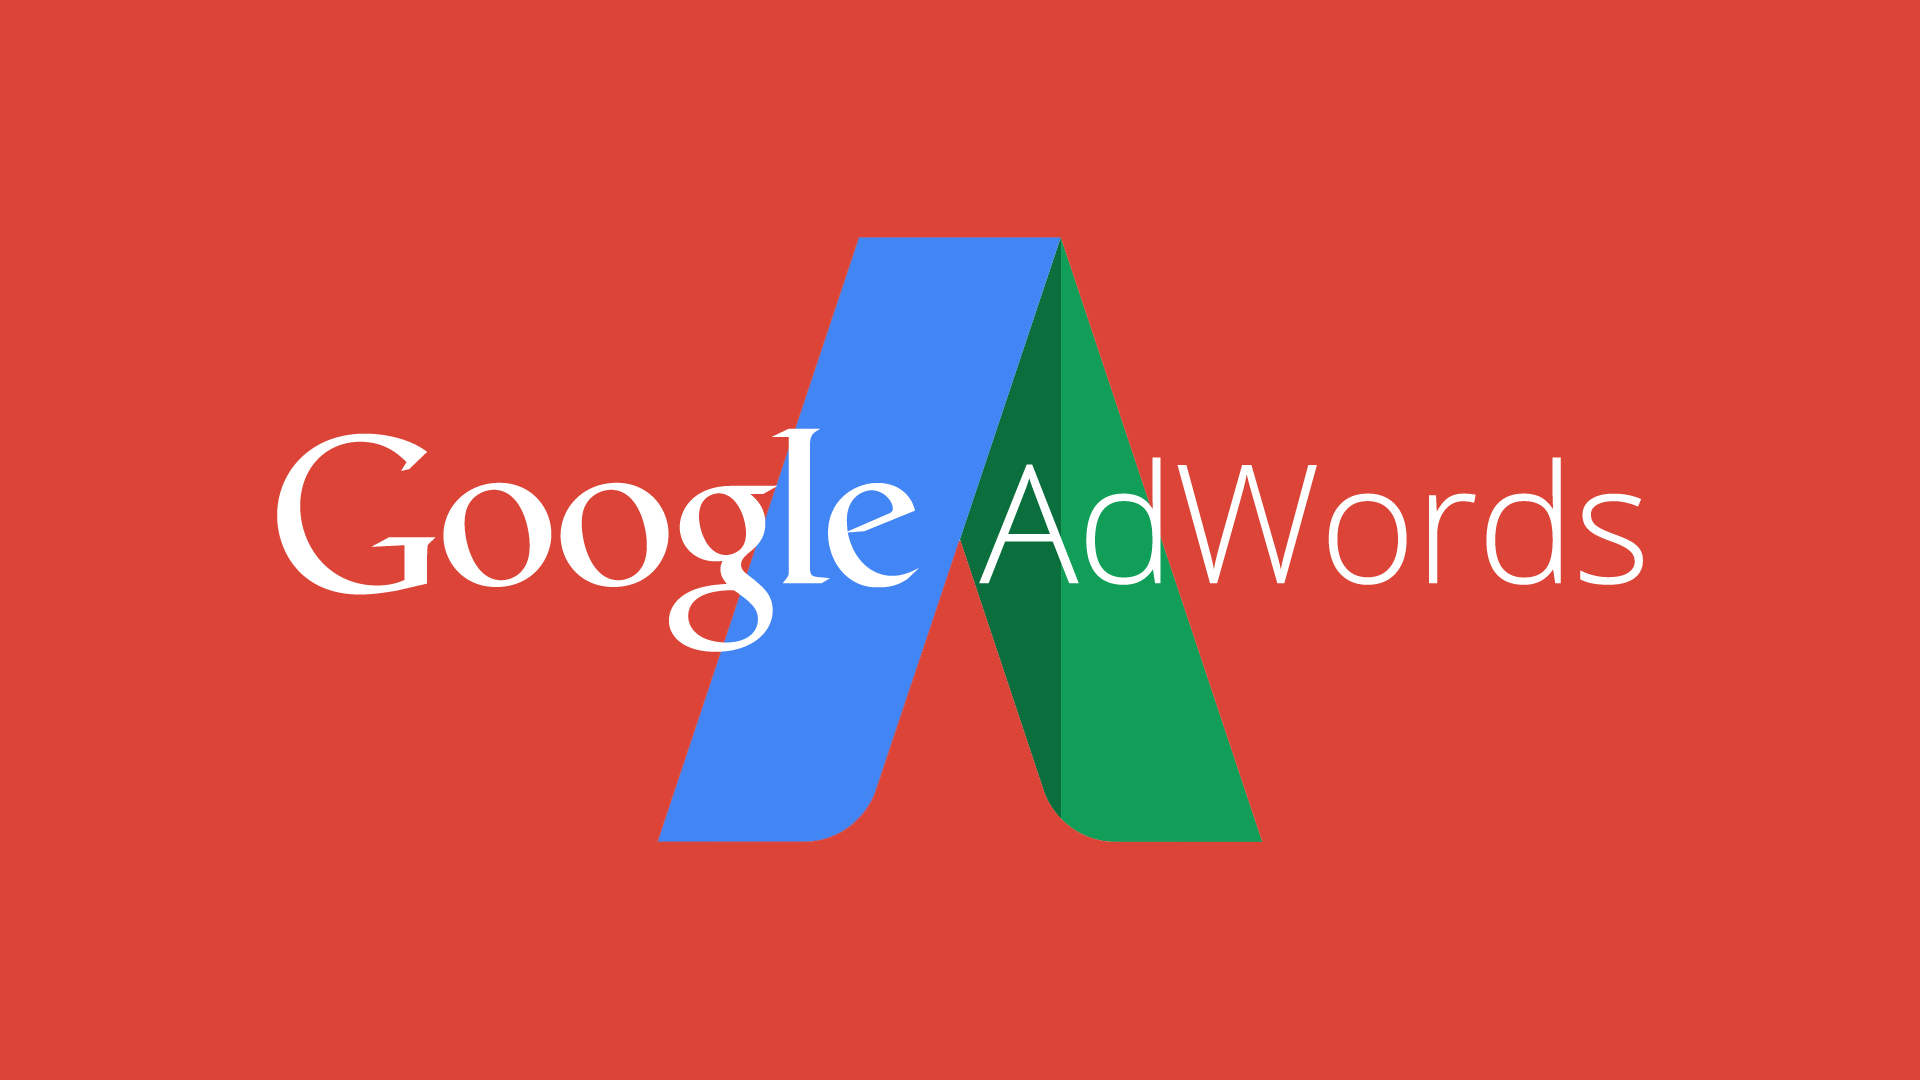 Khởi tạo chiến dịch Google Adwords qua 9 bước cơ bản